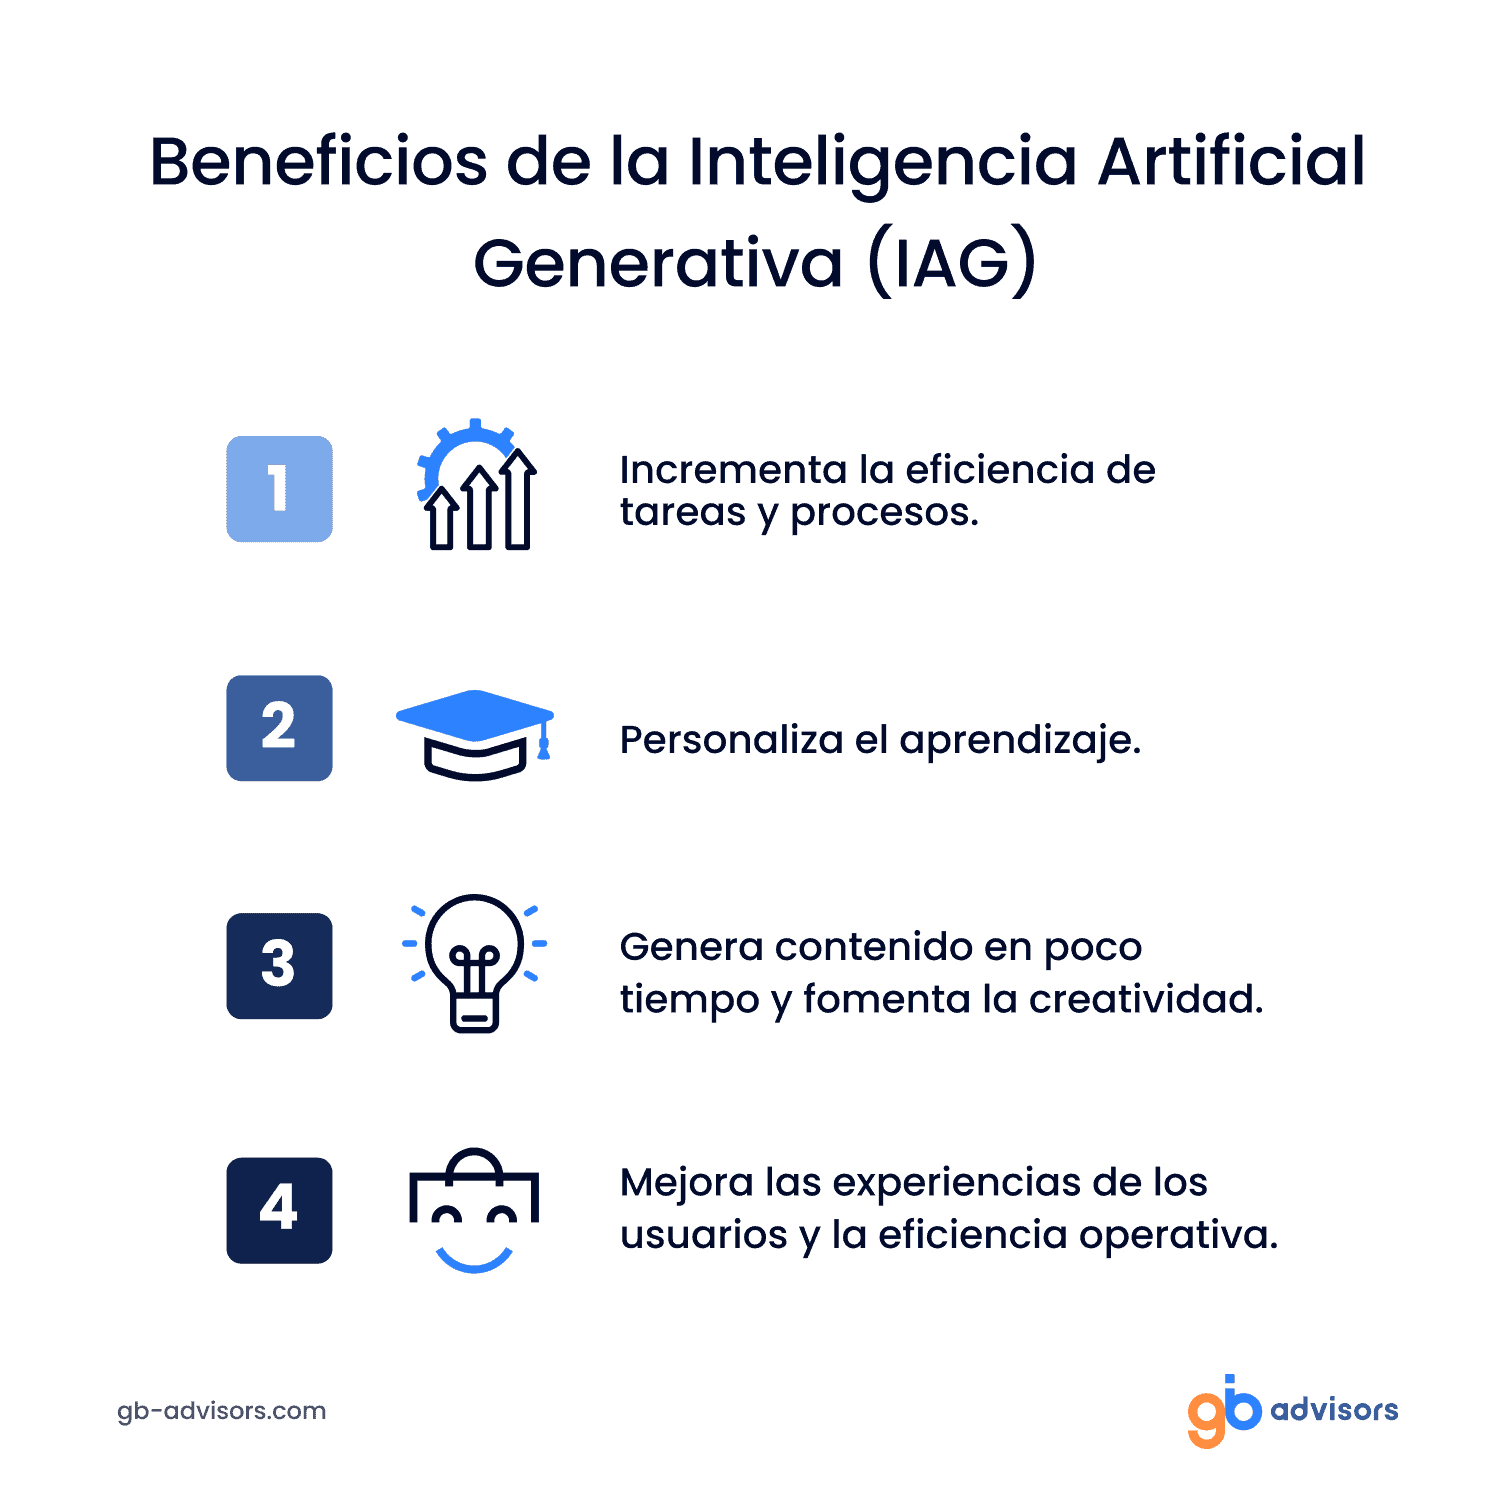 Beneficios de la IA Generativa